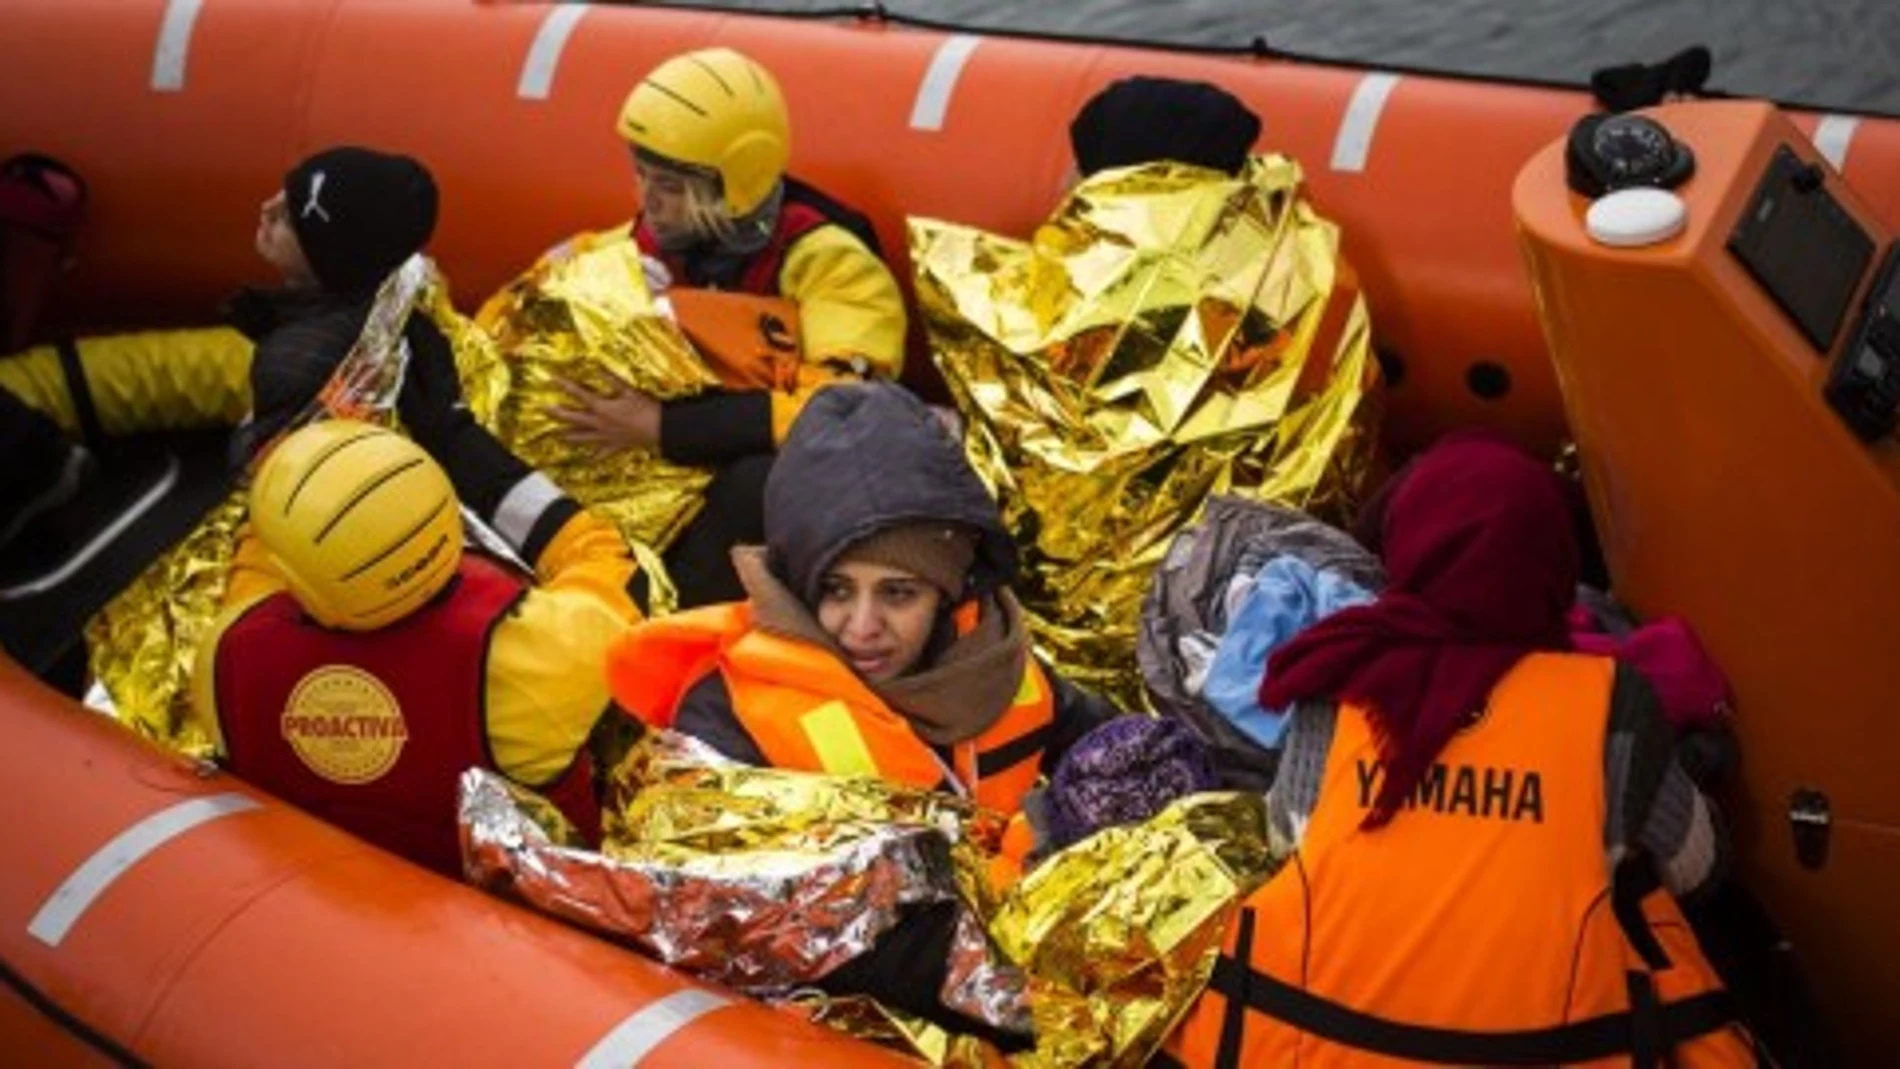 Cada día llegan entre 100 y 200 inmigrantes a las costas griegas